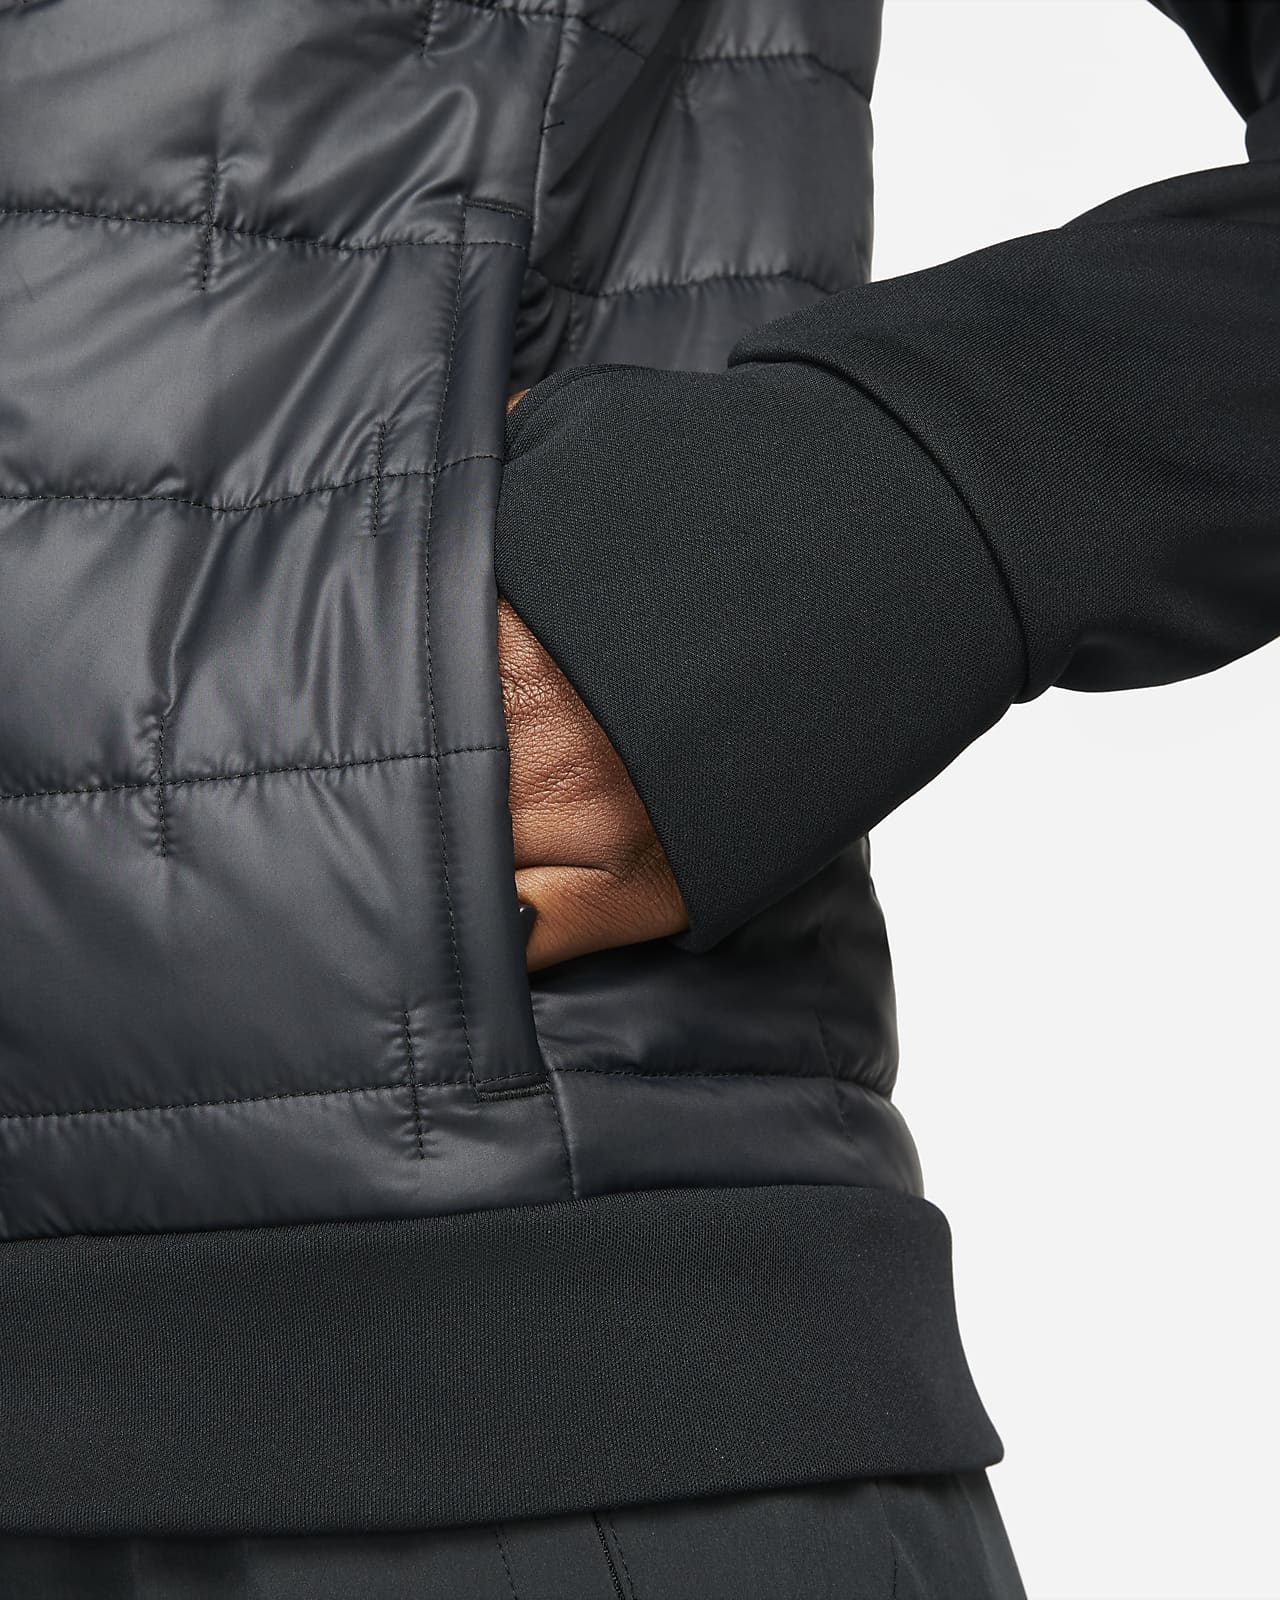 Nike Sportswear Therma-FIT City Series Women's Jacket (Black) Size